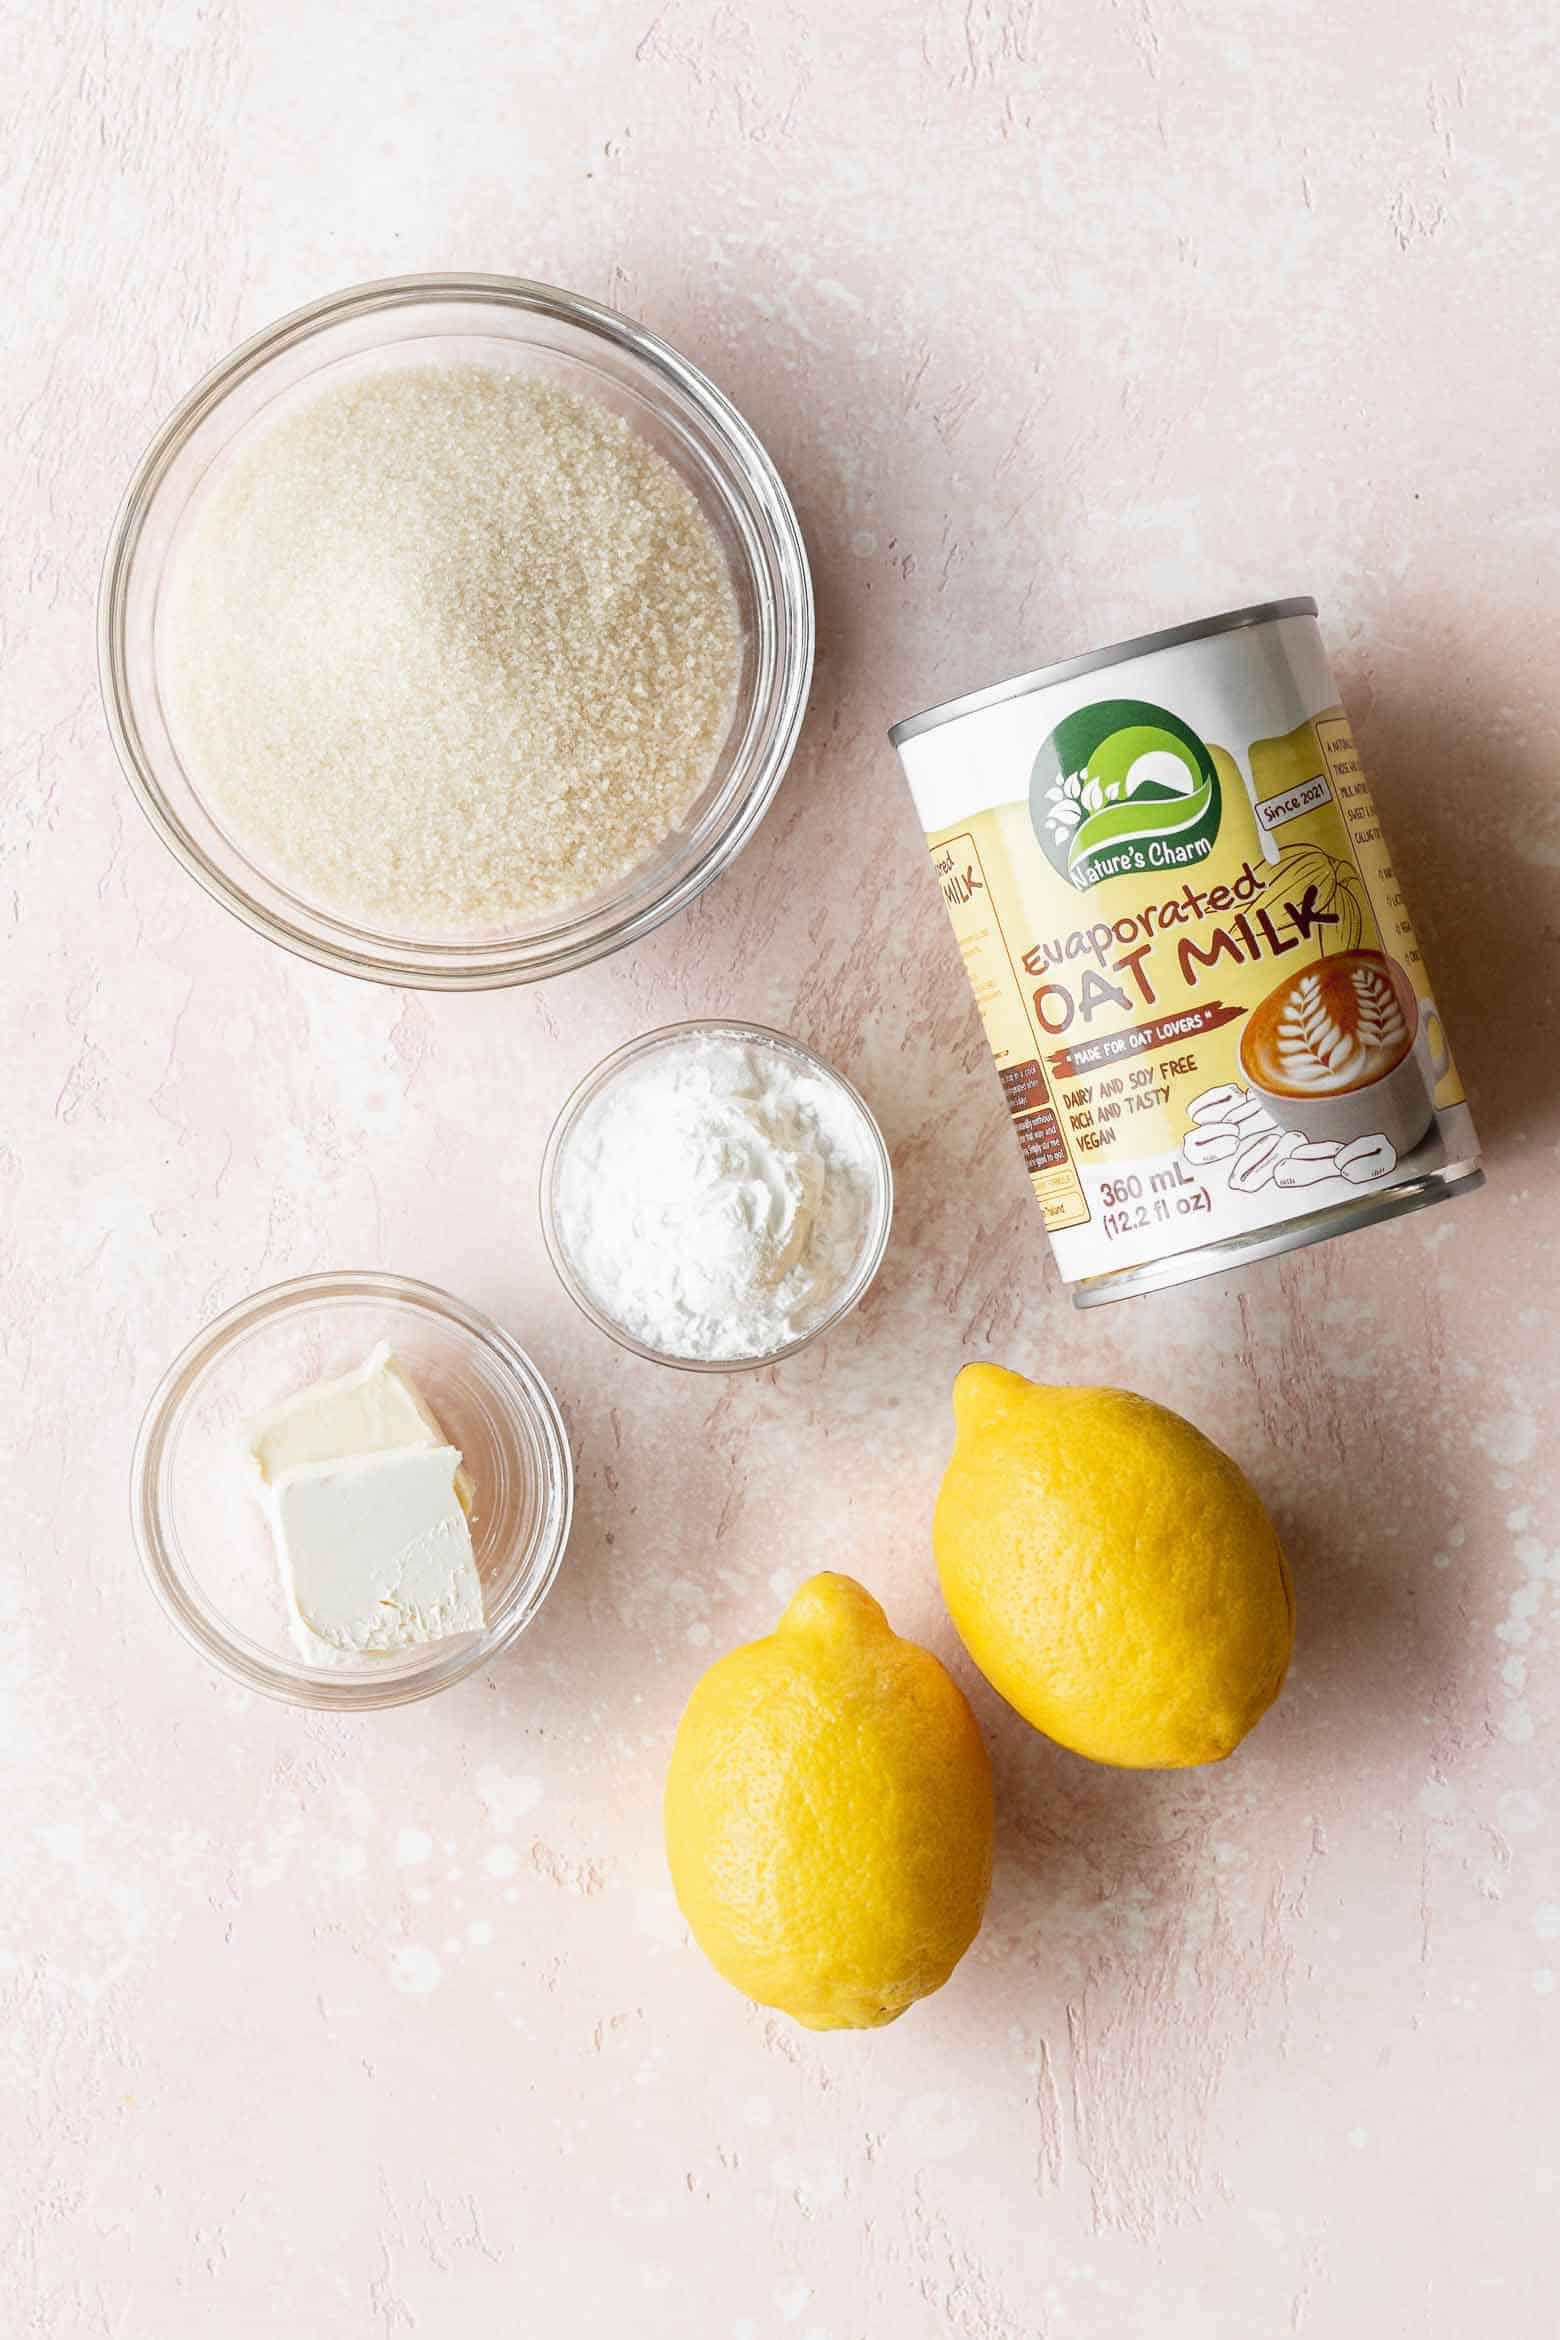 Vegan lemon curd ingredients